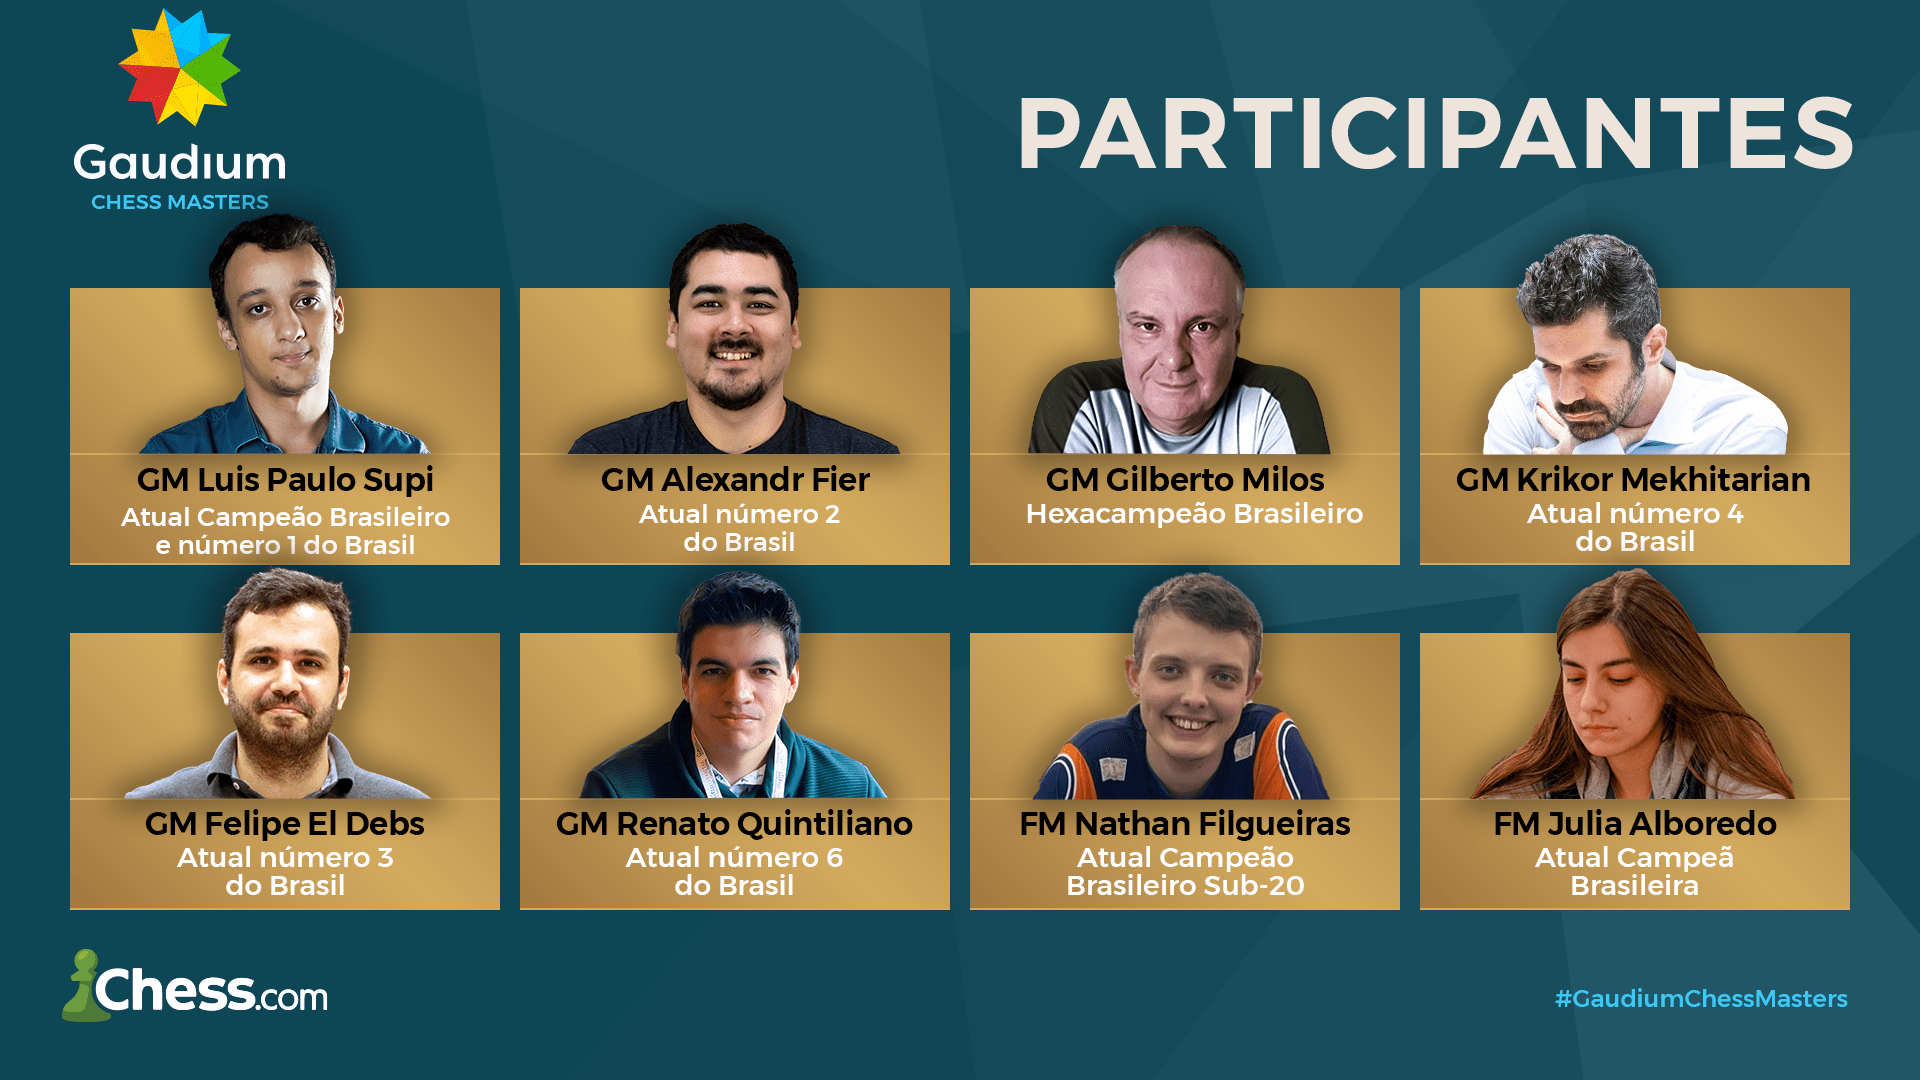 Chess.com - Português - 🏆 Torneio ARENA - Chess.com - Português 👉 1°  Passo: Entre no CLUBE! 😍 ➡️   📍Toda Terça-feira às 20:00 (3+0) 60 min de torneio ⚡️Torneio Semanal  ChesscomPT 